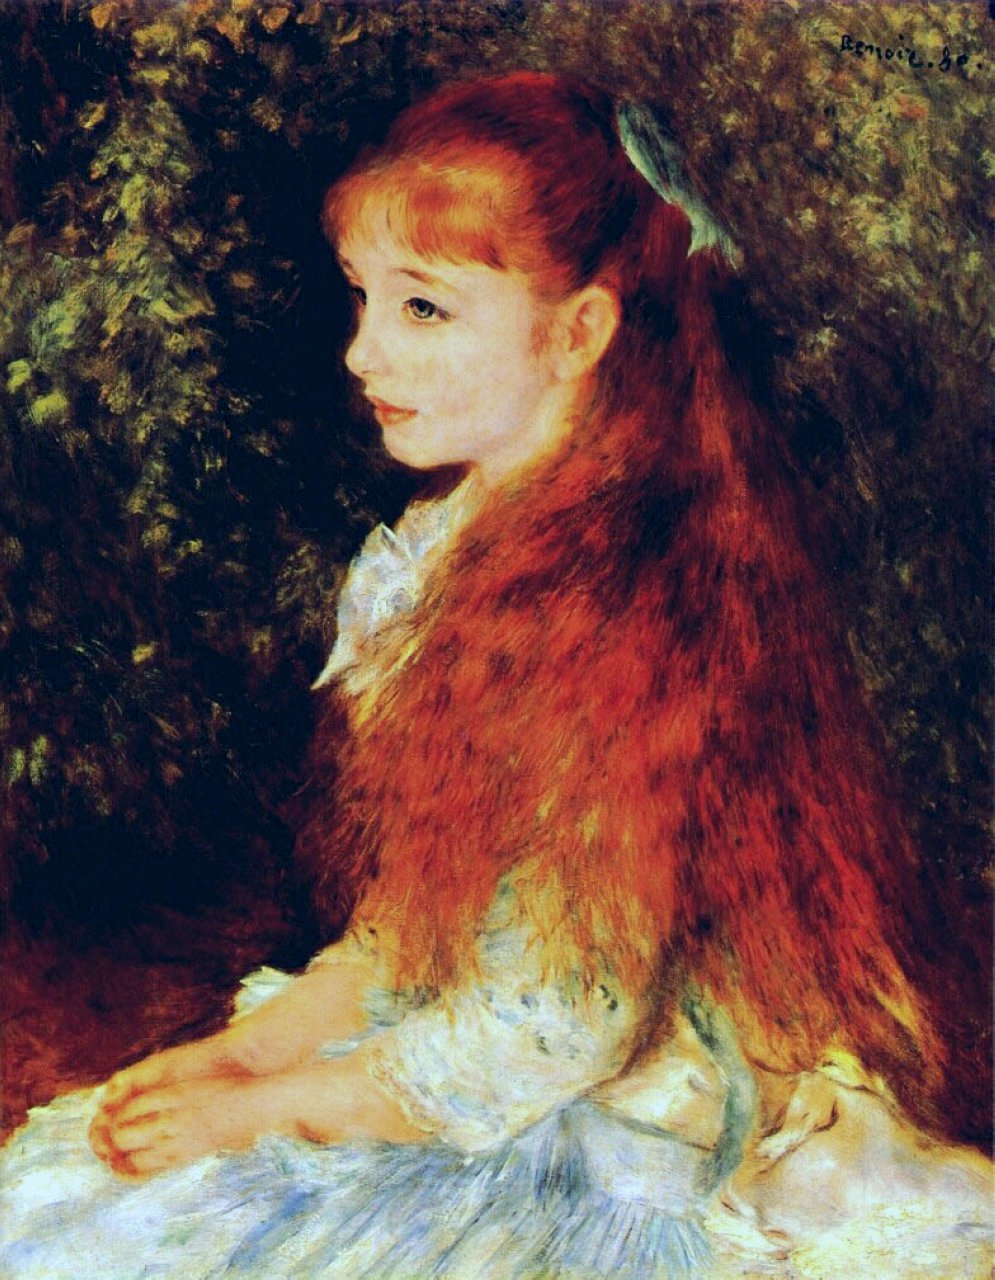 Irène Cahen d’Anvers by Pierre-Auguste Renoir - 1880 - 65 x 54 cm Foundation E.G. Bührle